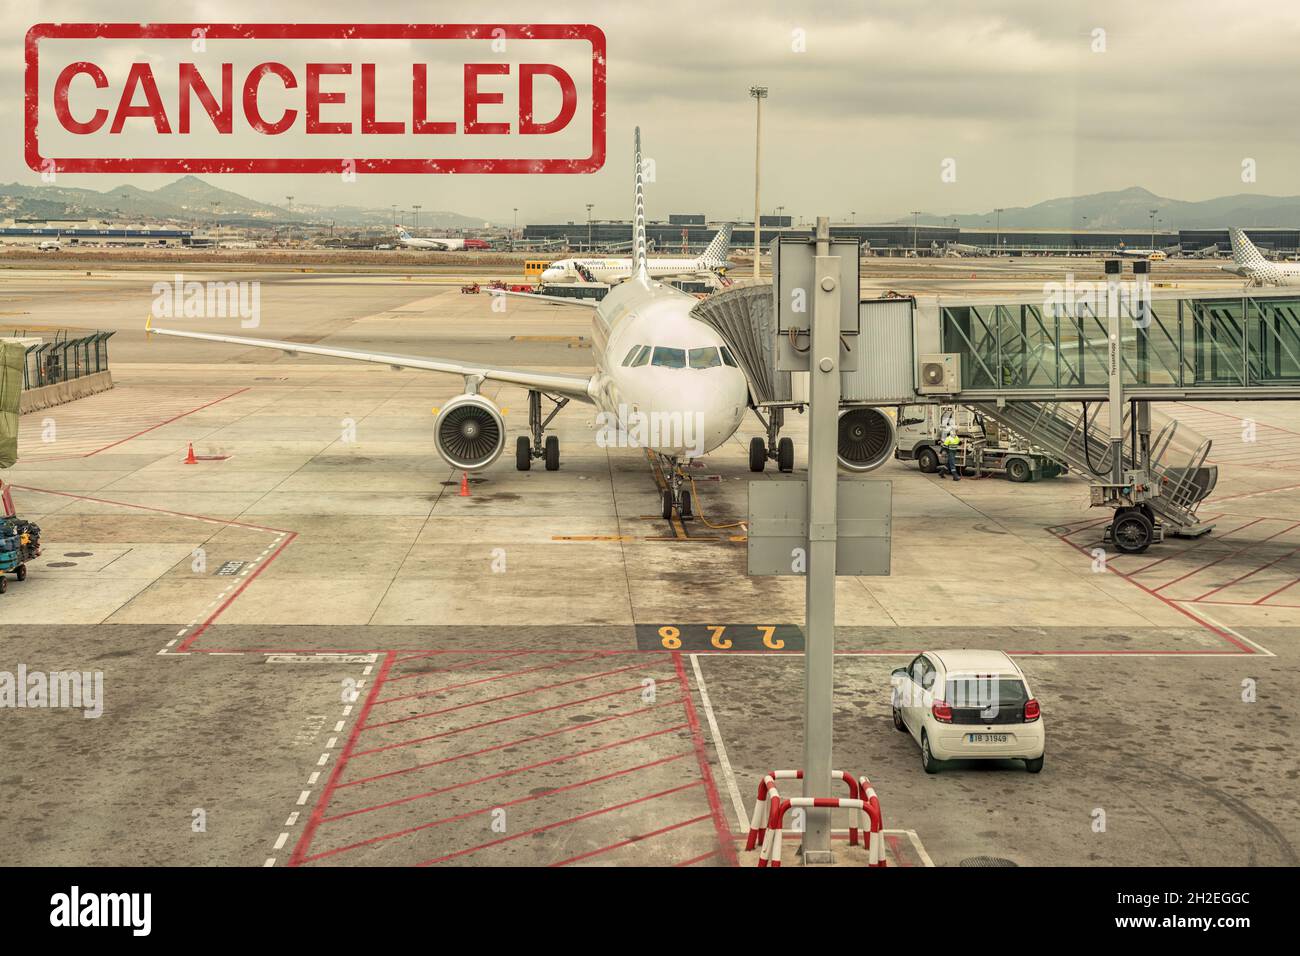 Barcelona, Spanien - 11. März 2019: Flug gestrichen. Viele Fluggesellschaften stornieren ihre Flüge aufgrund des Coronavirus-Ausbruchs. Epidemien-Virus 2 Stockfoto